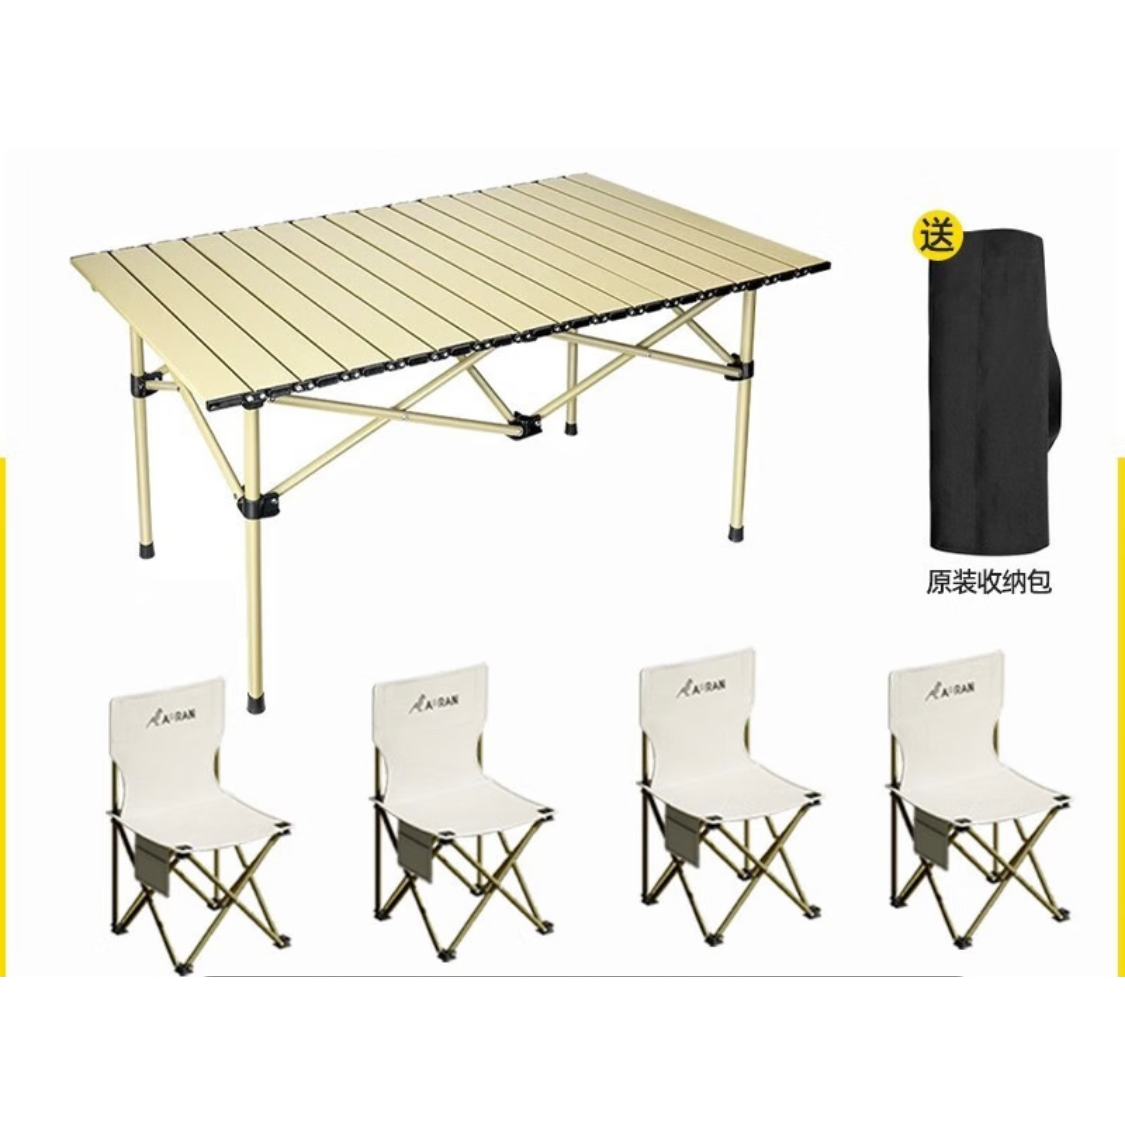 Aoran户外露营装备便携长桌+折叠椅*4 95.00元